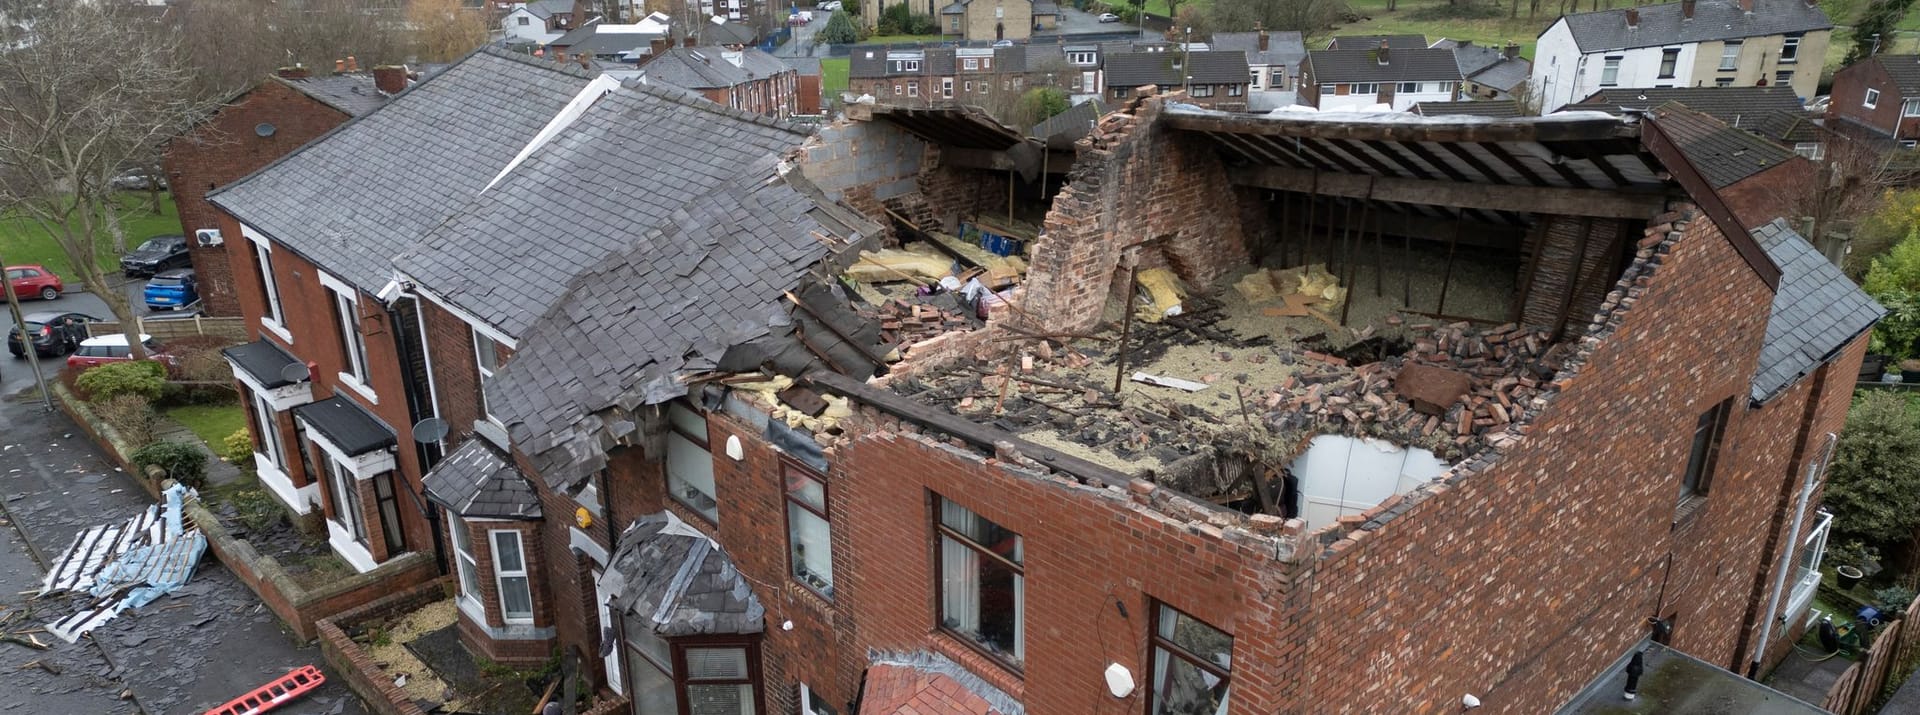 Mutmaßlicher Tornado sorgt in der Nacht auf Donnerstag für Zerstörung im Großraum Manchester.